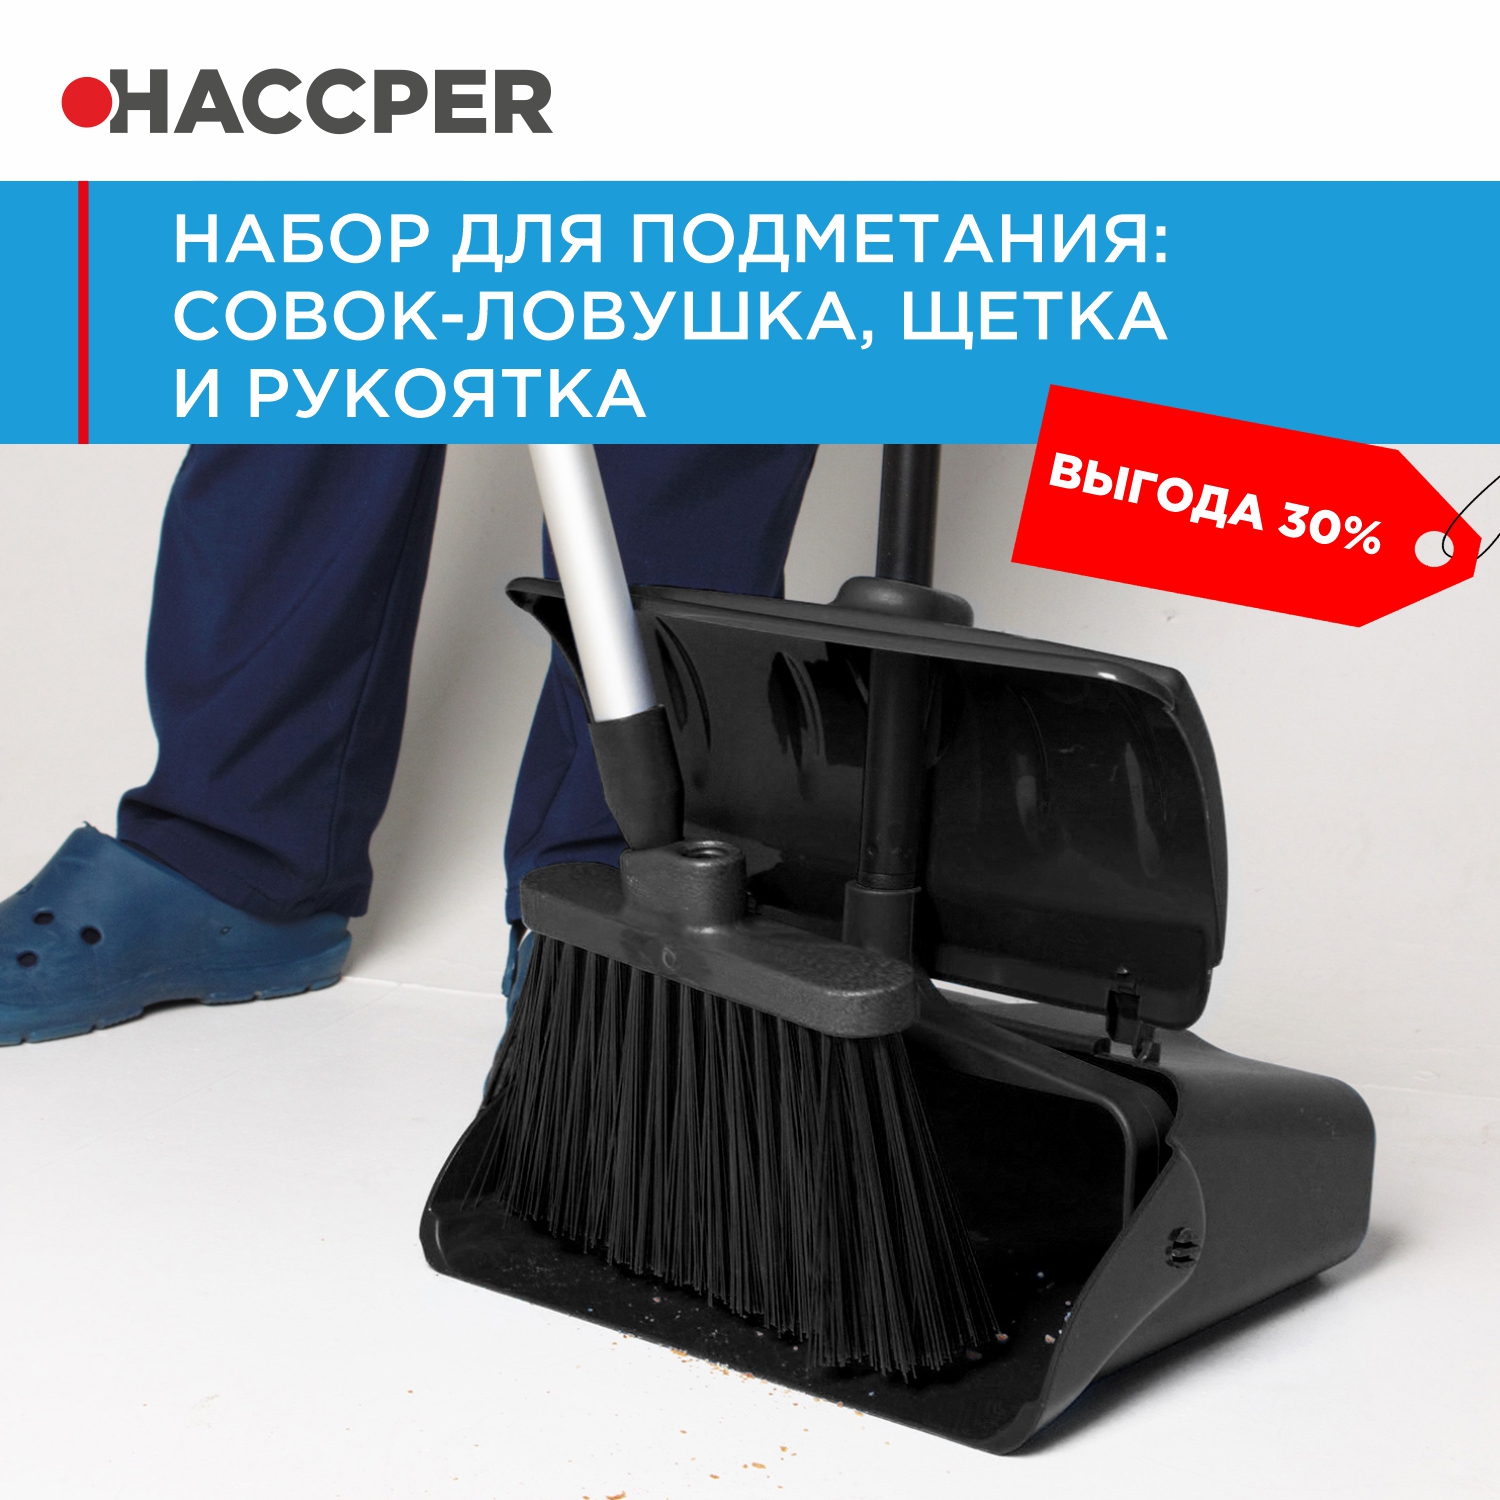 Набор для подметания HACCPER совок-ловушка, щетка и рукоятка, черный